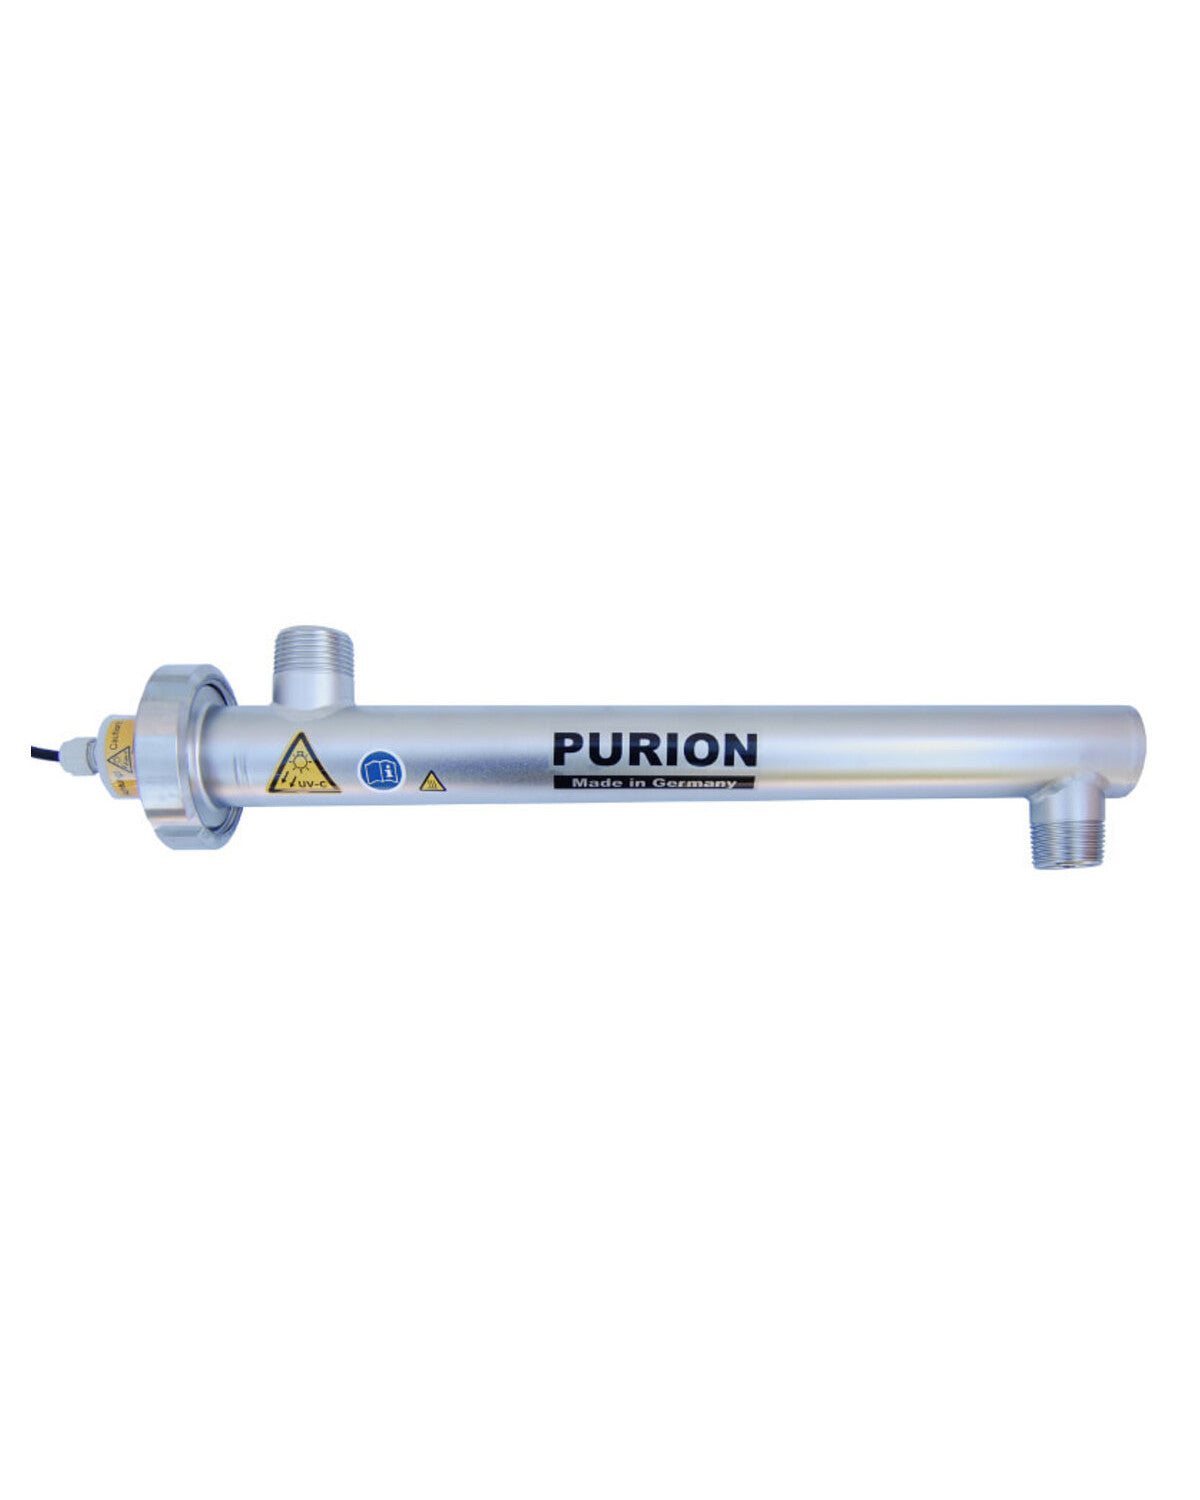 Die PURION GmbH ist auf die Wasserdesinfektion mittels UV-C-Licht spezialisiert, um mit ihrem Produkt, dem PURION 1000 110 - 240 V AC Basic, sicheres und sauberes Trinkwasser für den Verbrauch zu gewährleisten.